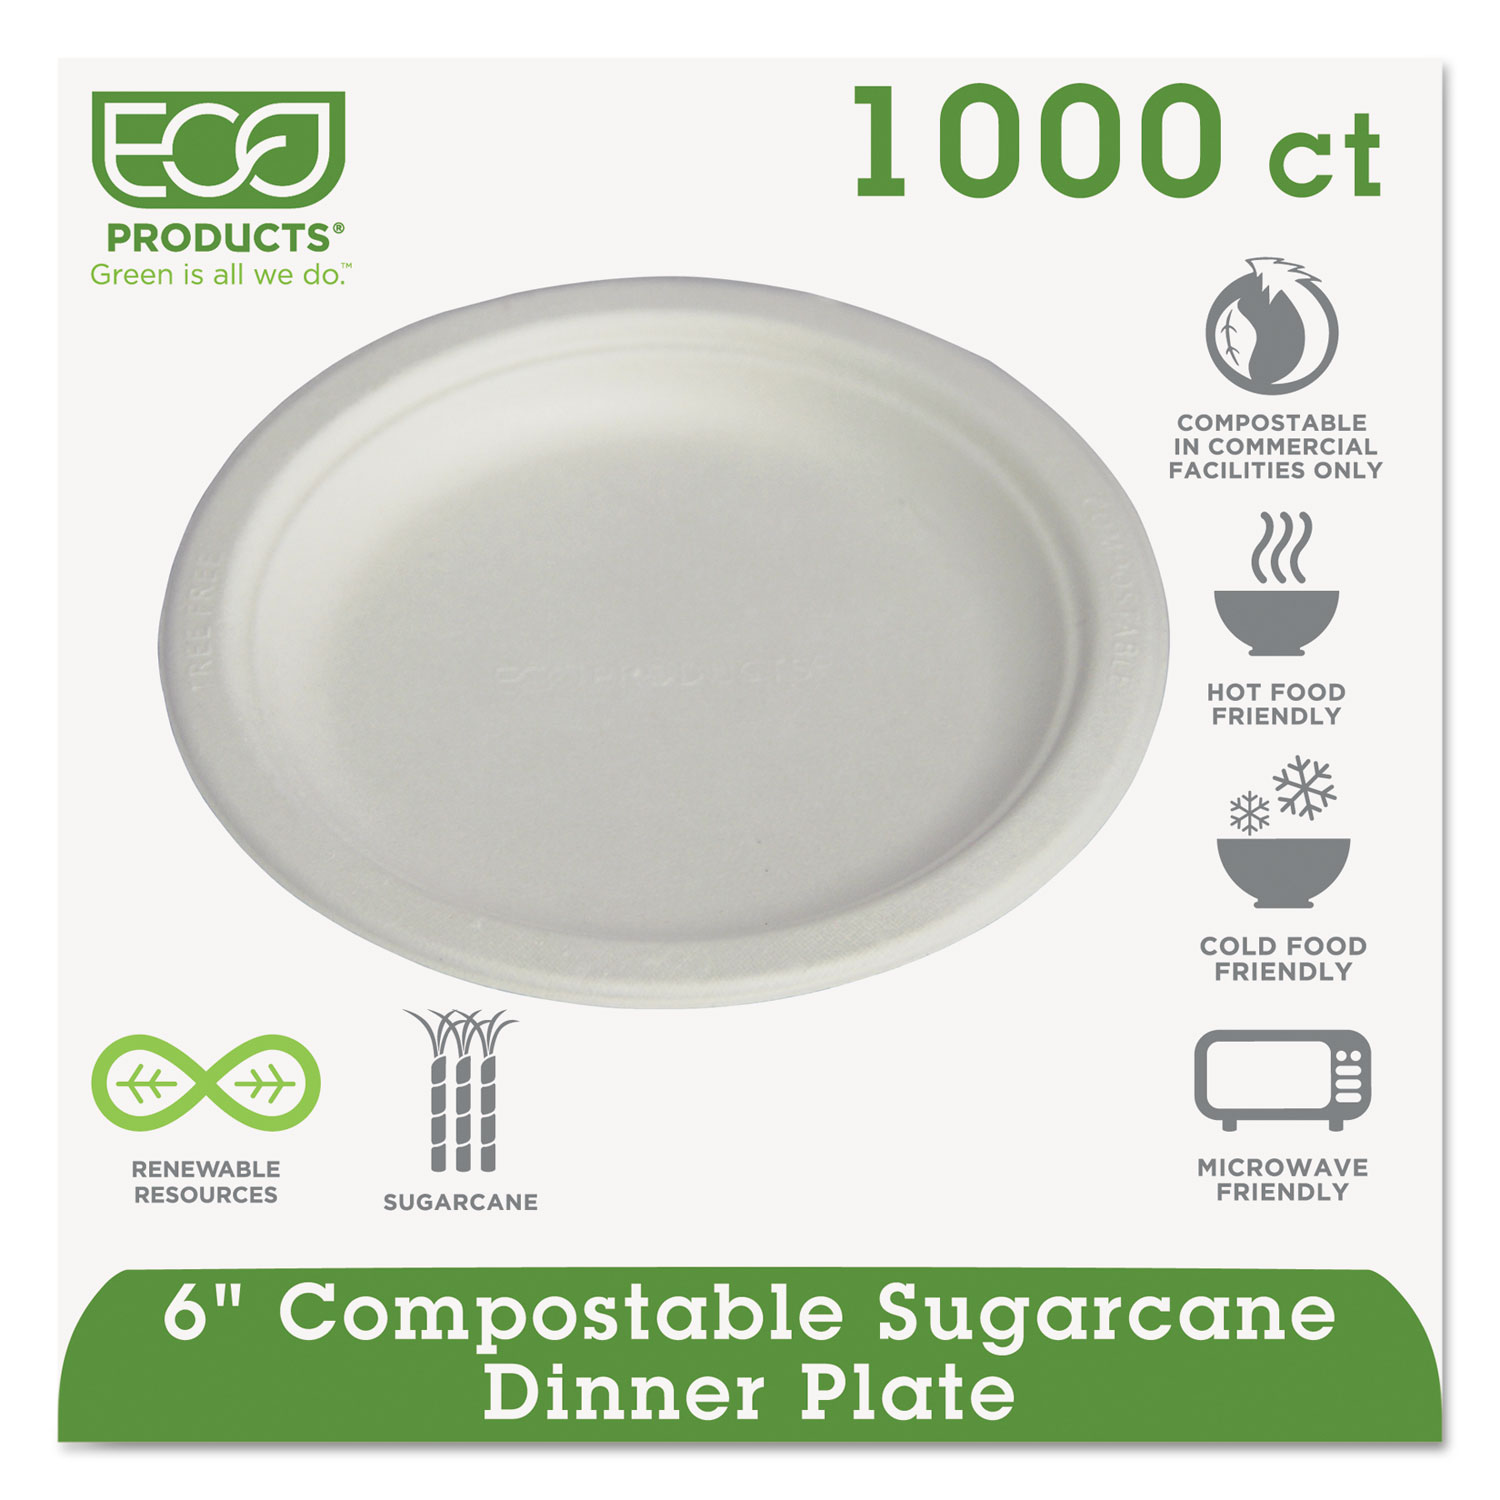  Eco-Products EP-P016PK Renewable & Compostable Sugarcane Plates Convenience Pack, 6, 50/PK, 20 PK/CT (ECOEPP016PKCT) 